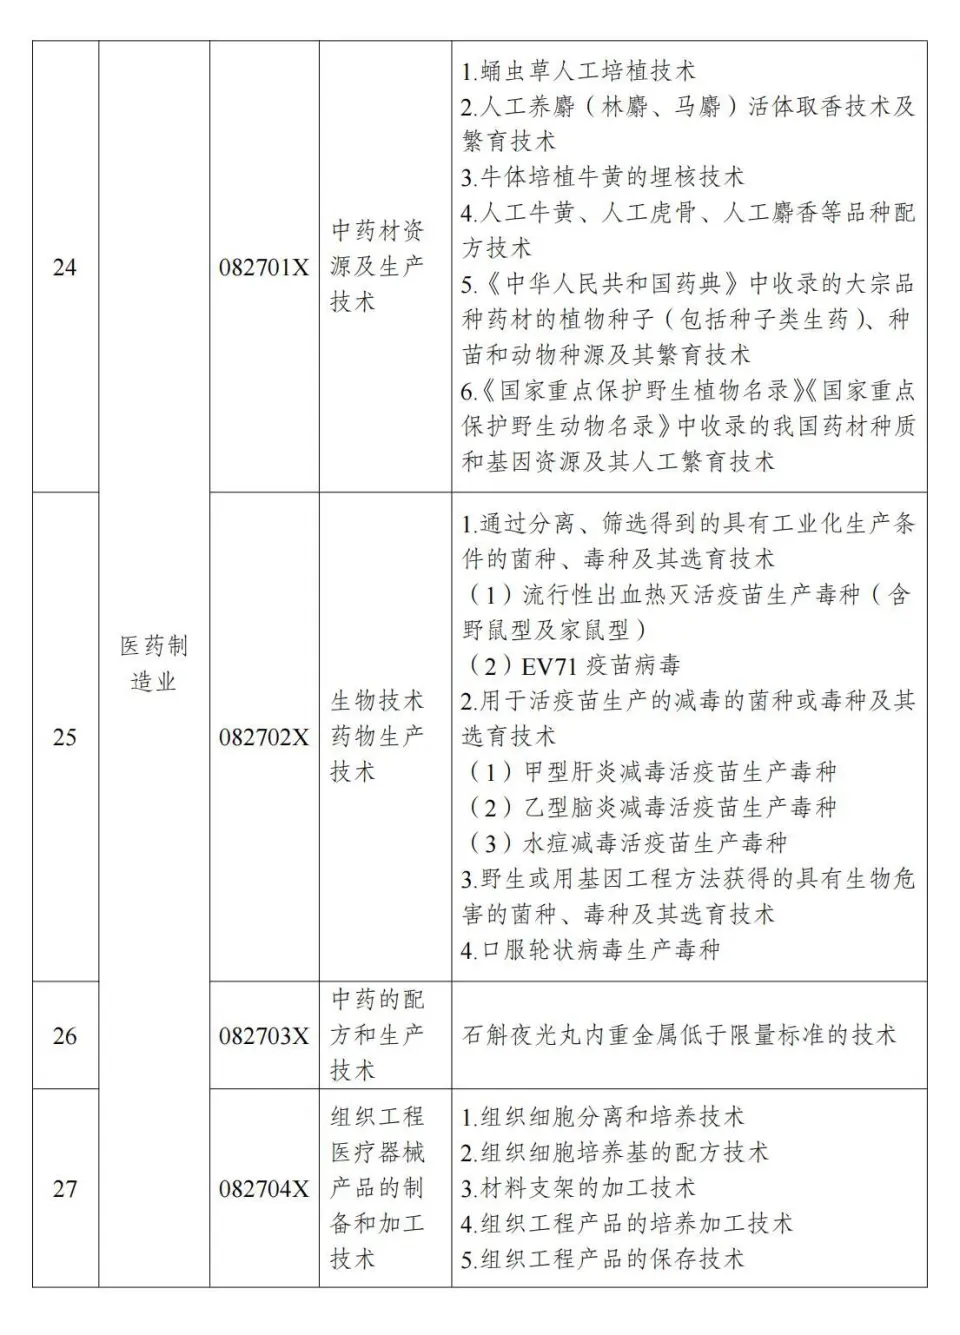 两部分公布《中国制止出口限制出口技术目录》 第9张图片